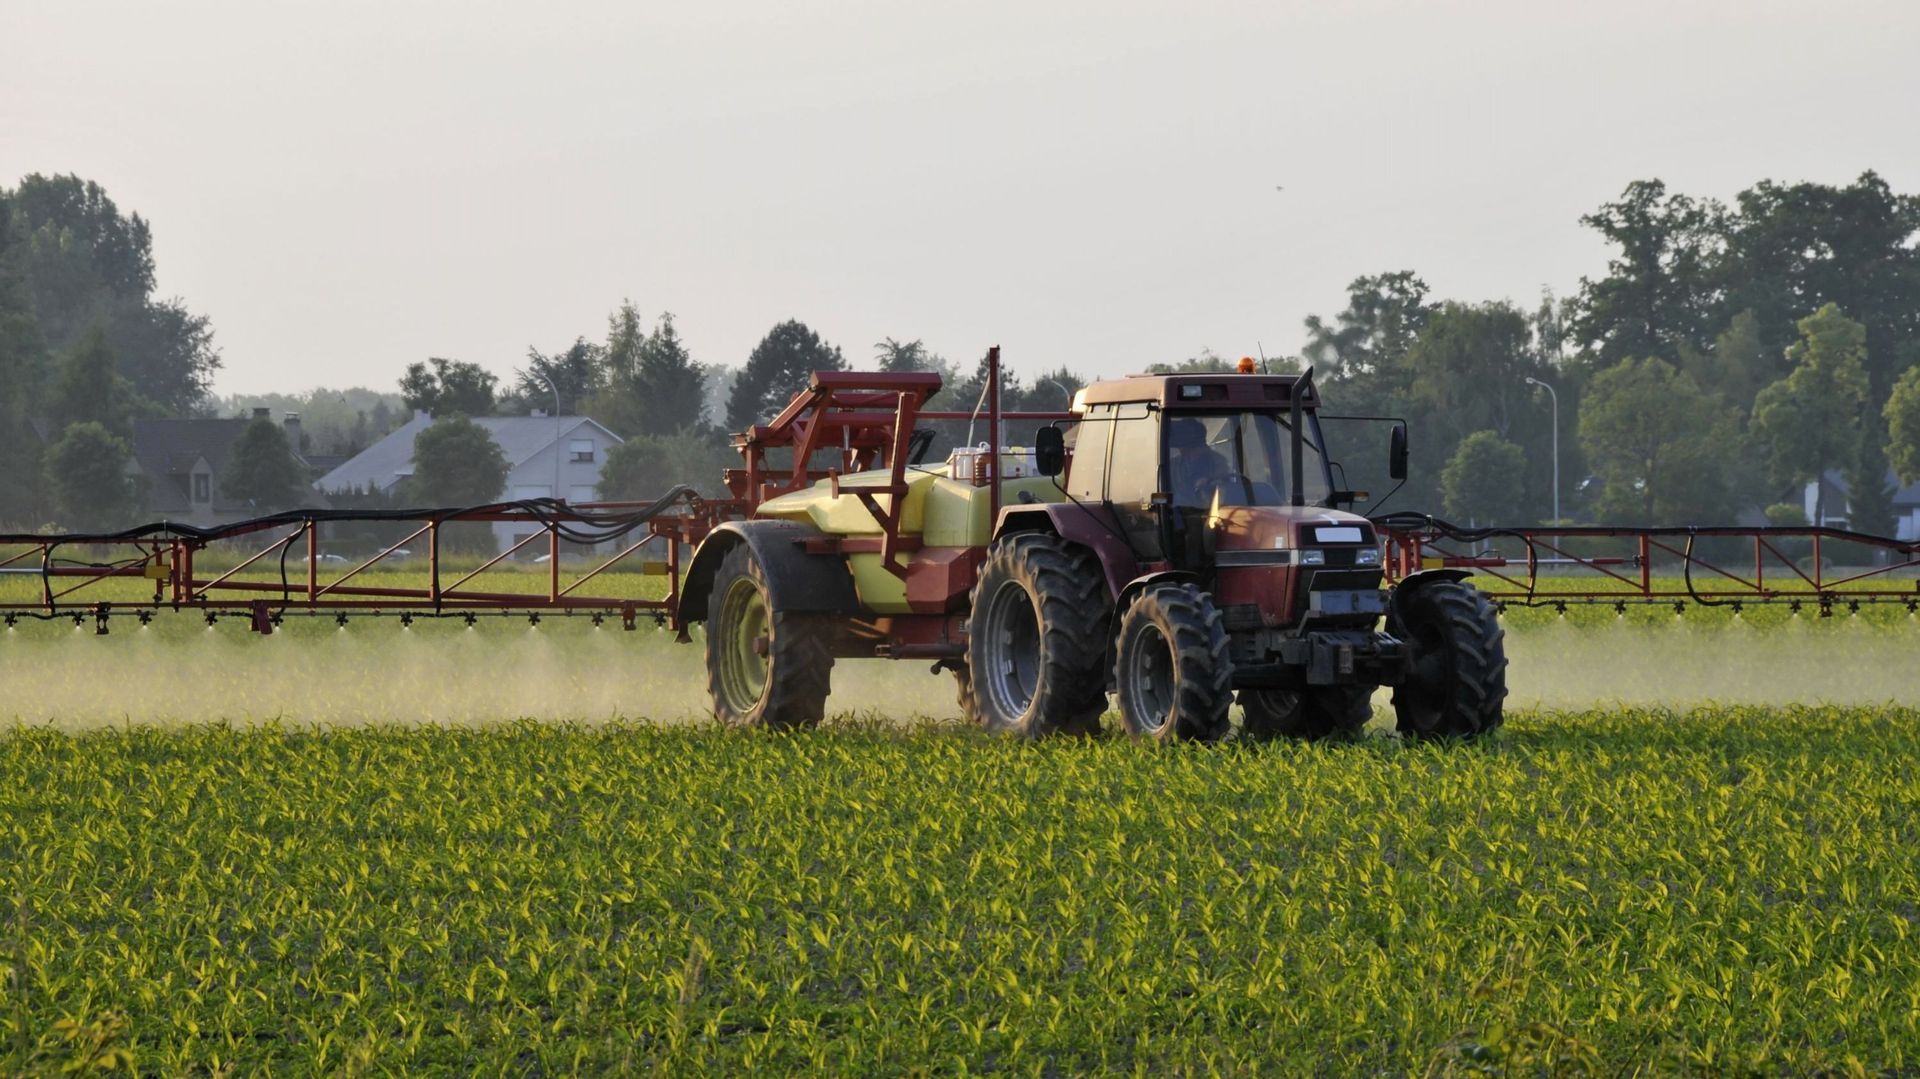 Deux ONG vont assigner le ministre fédéral de l’Agriculture David Clarinval en justice pour non-respect du règlement européen sur les pesticides.